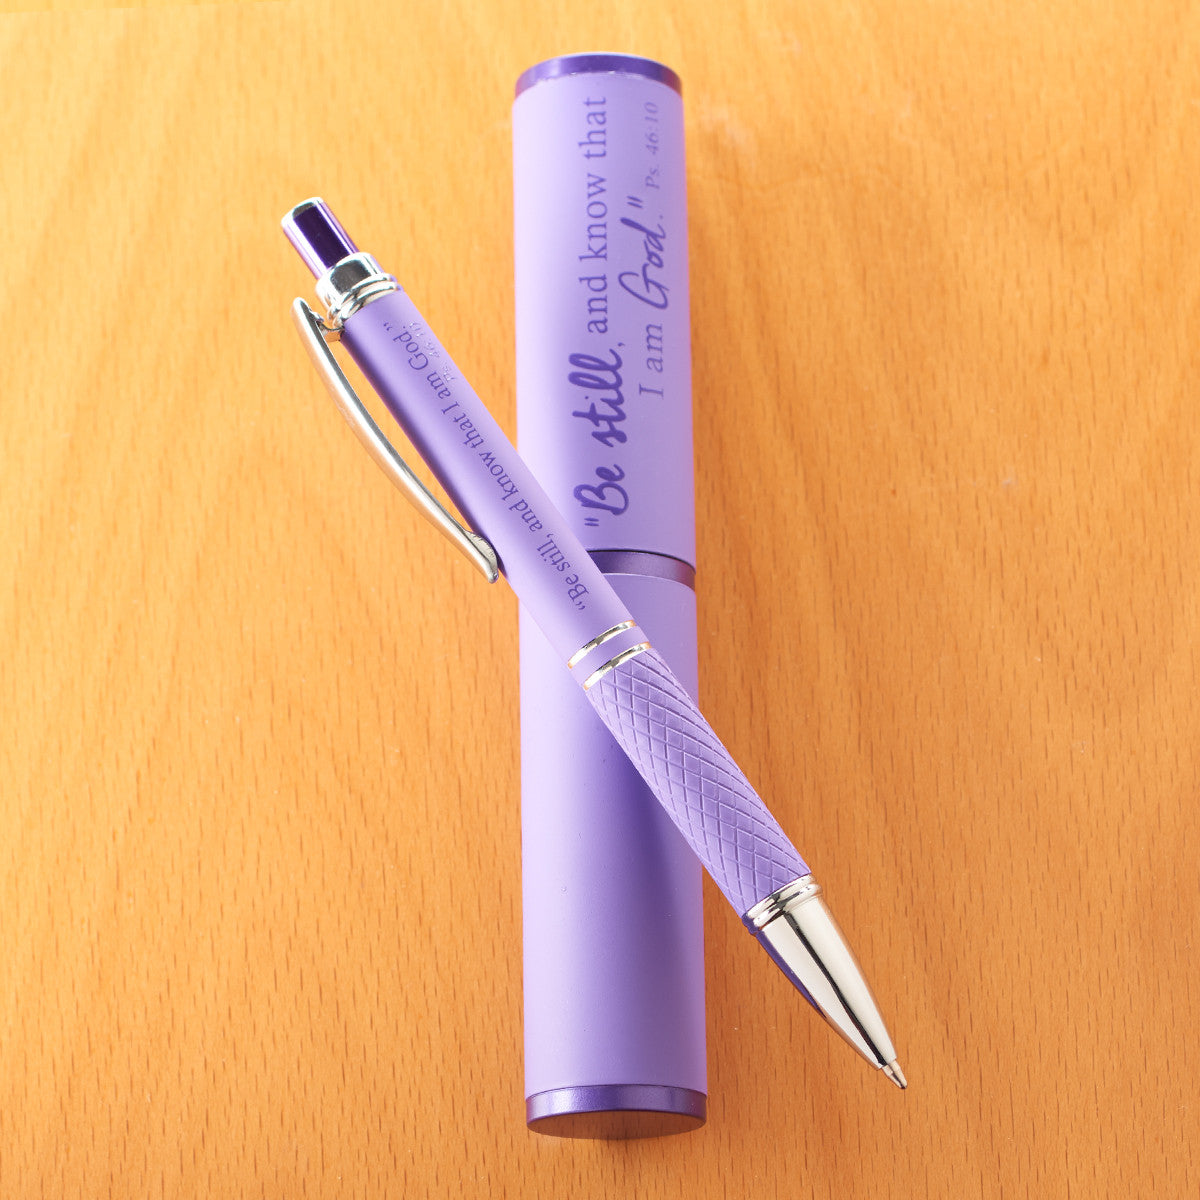 Stylish Pen and Case Gift Set